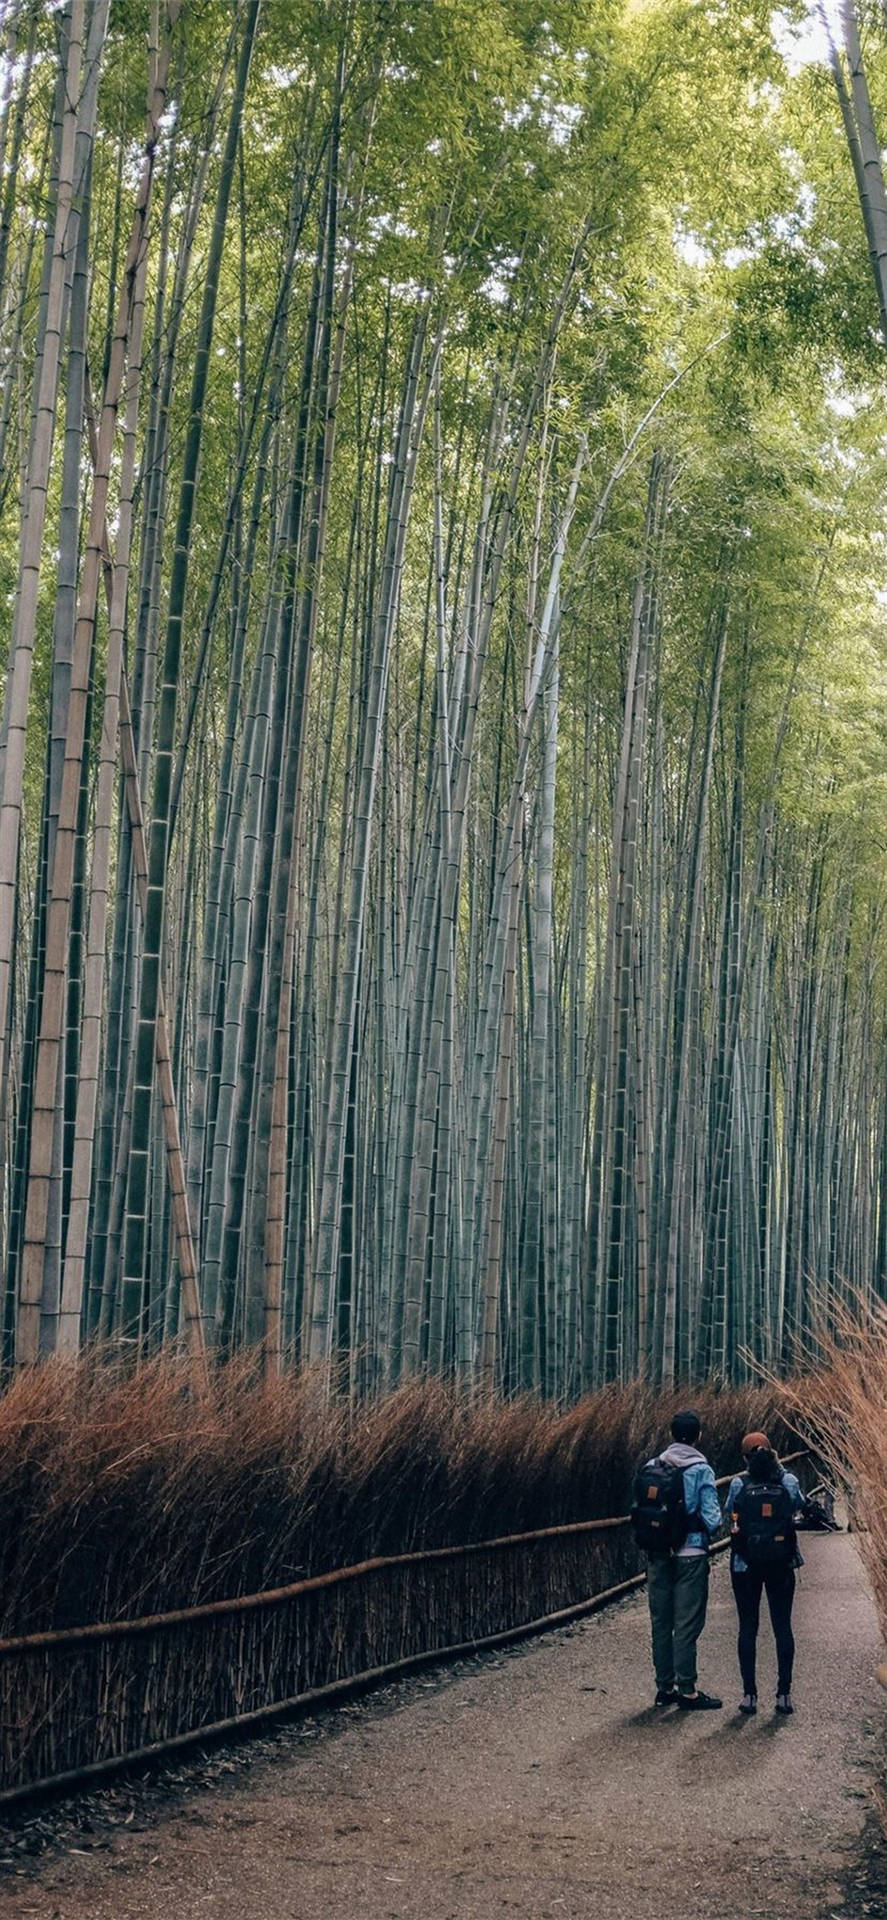 Parejaen Un Camino De Bambú En El Iphone Fondo de pantalla